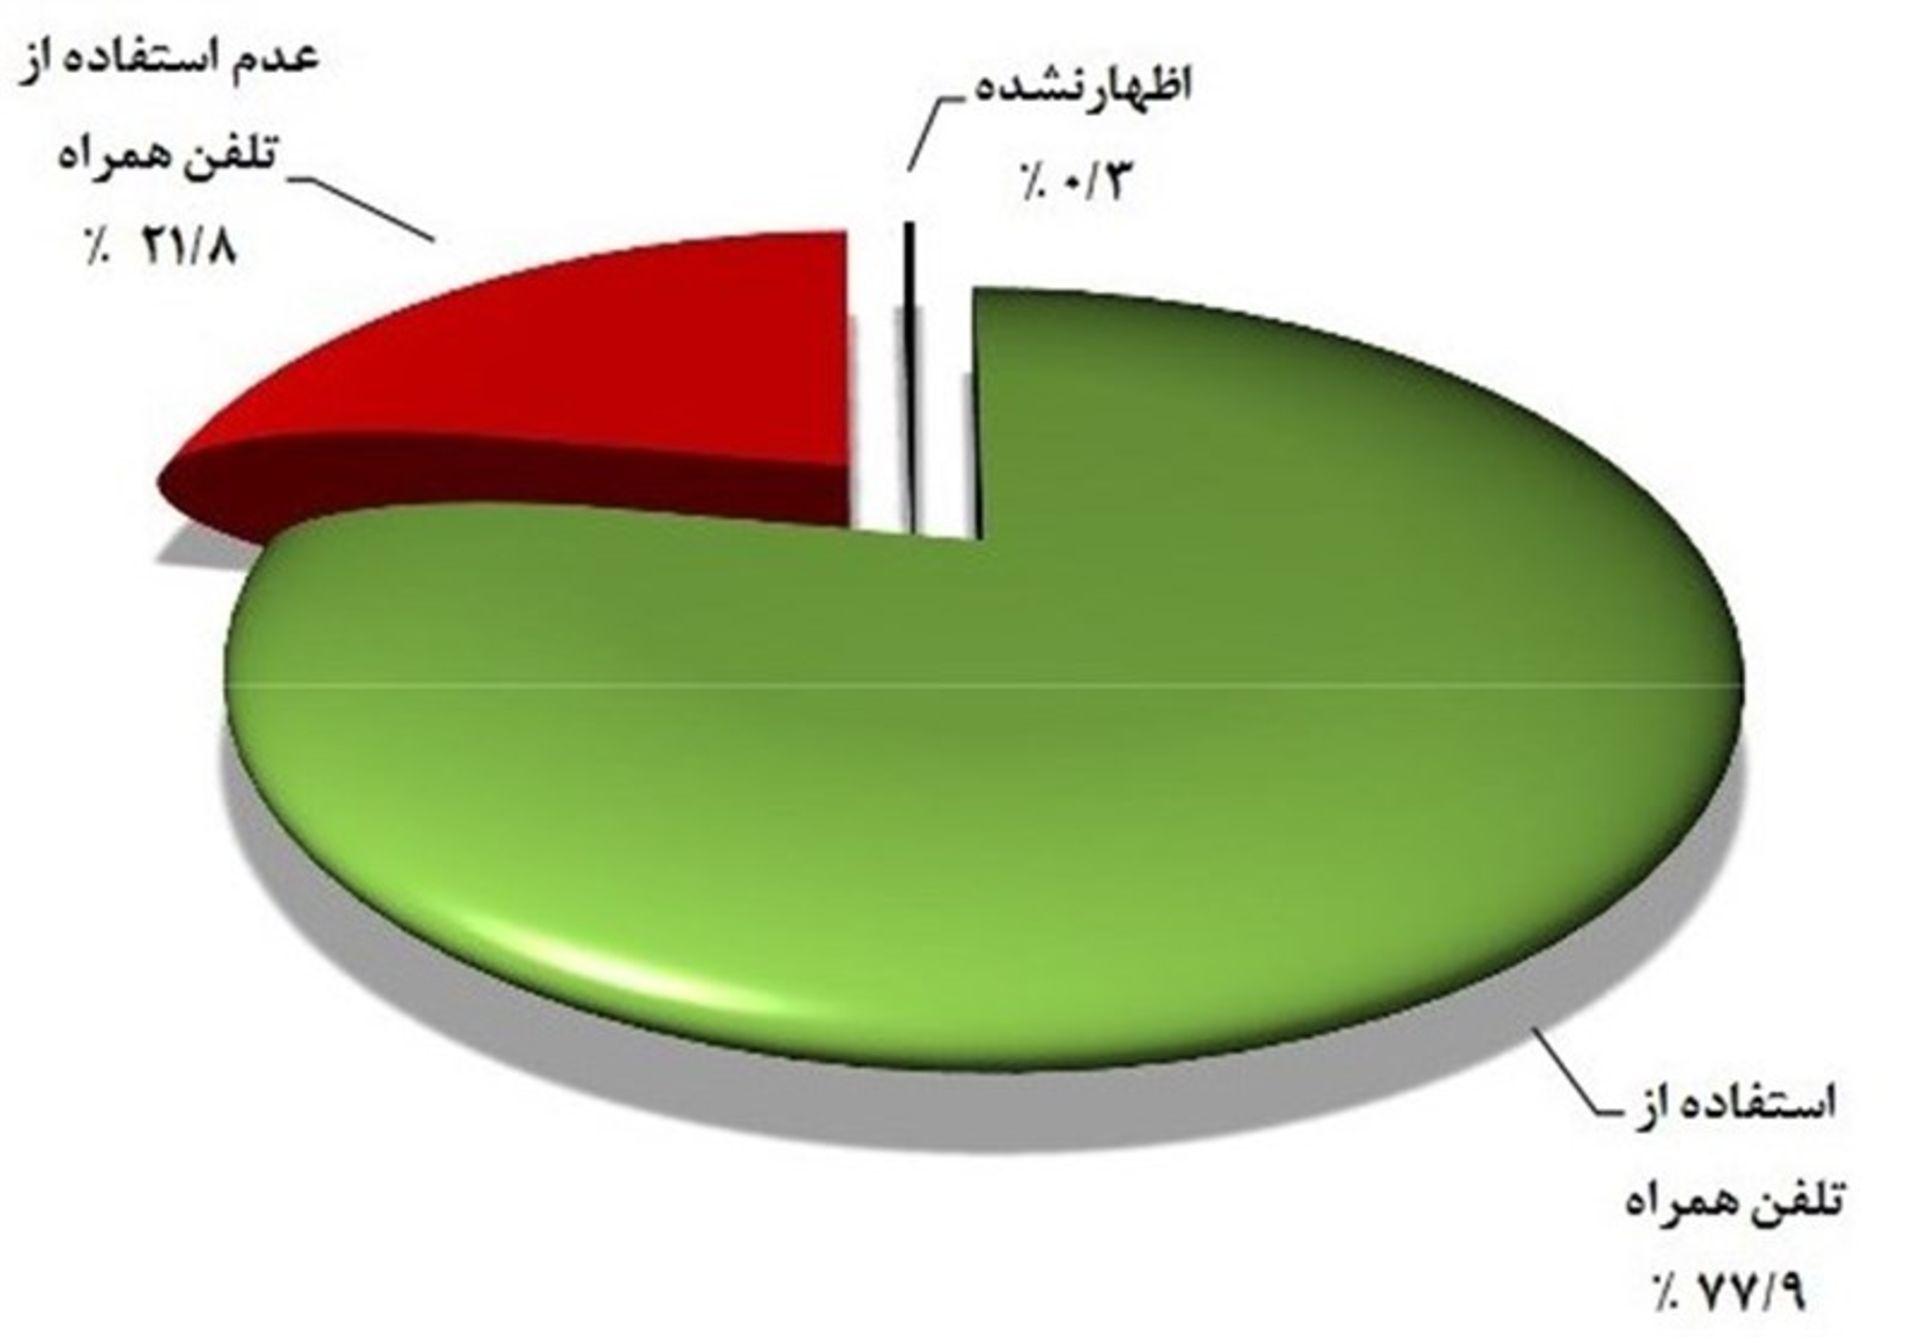 تعداد کاربران موبایل ایران